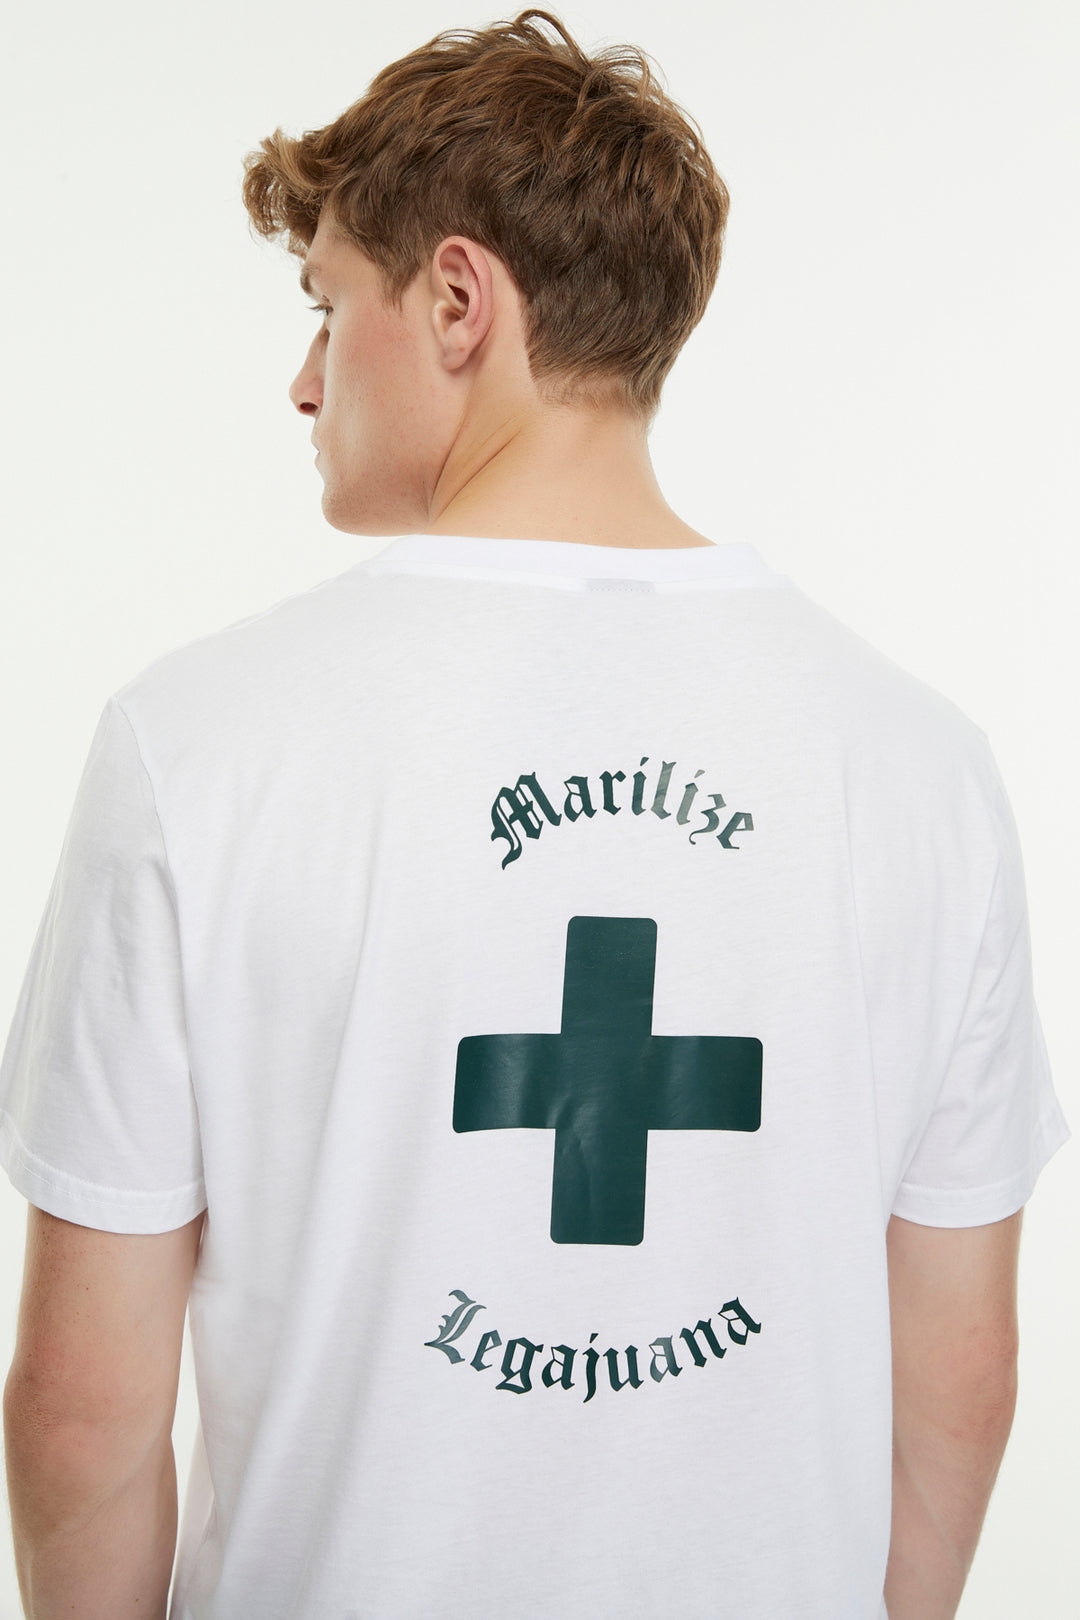 Mariilize Legajuana / Unisex T-shirt